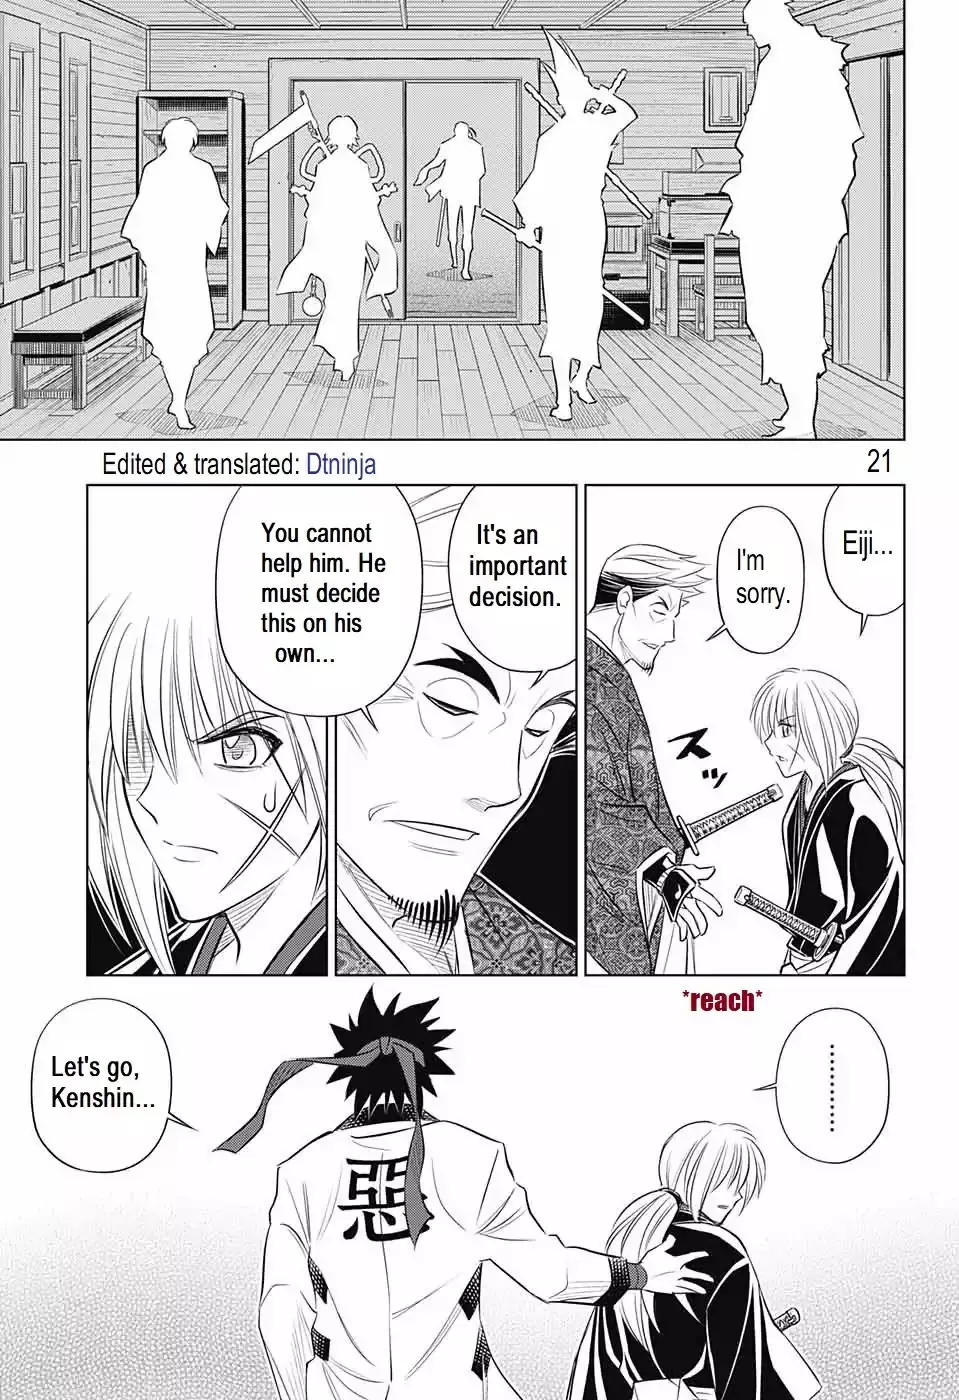 Rurouni Kenshin: Hokkaido Arc - 16 page 21